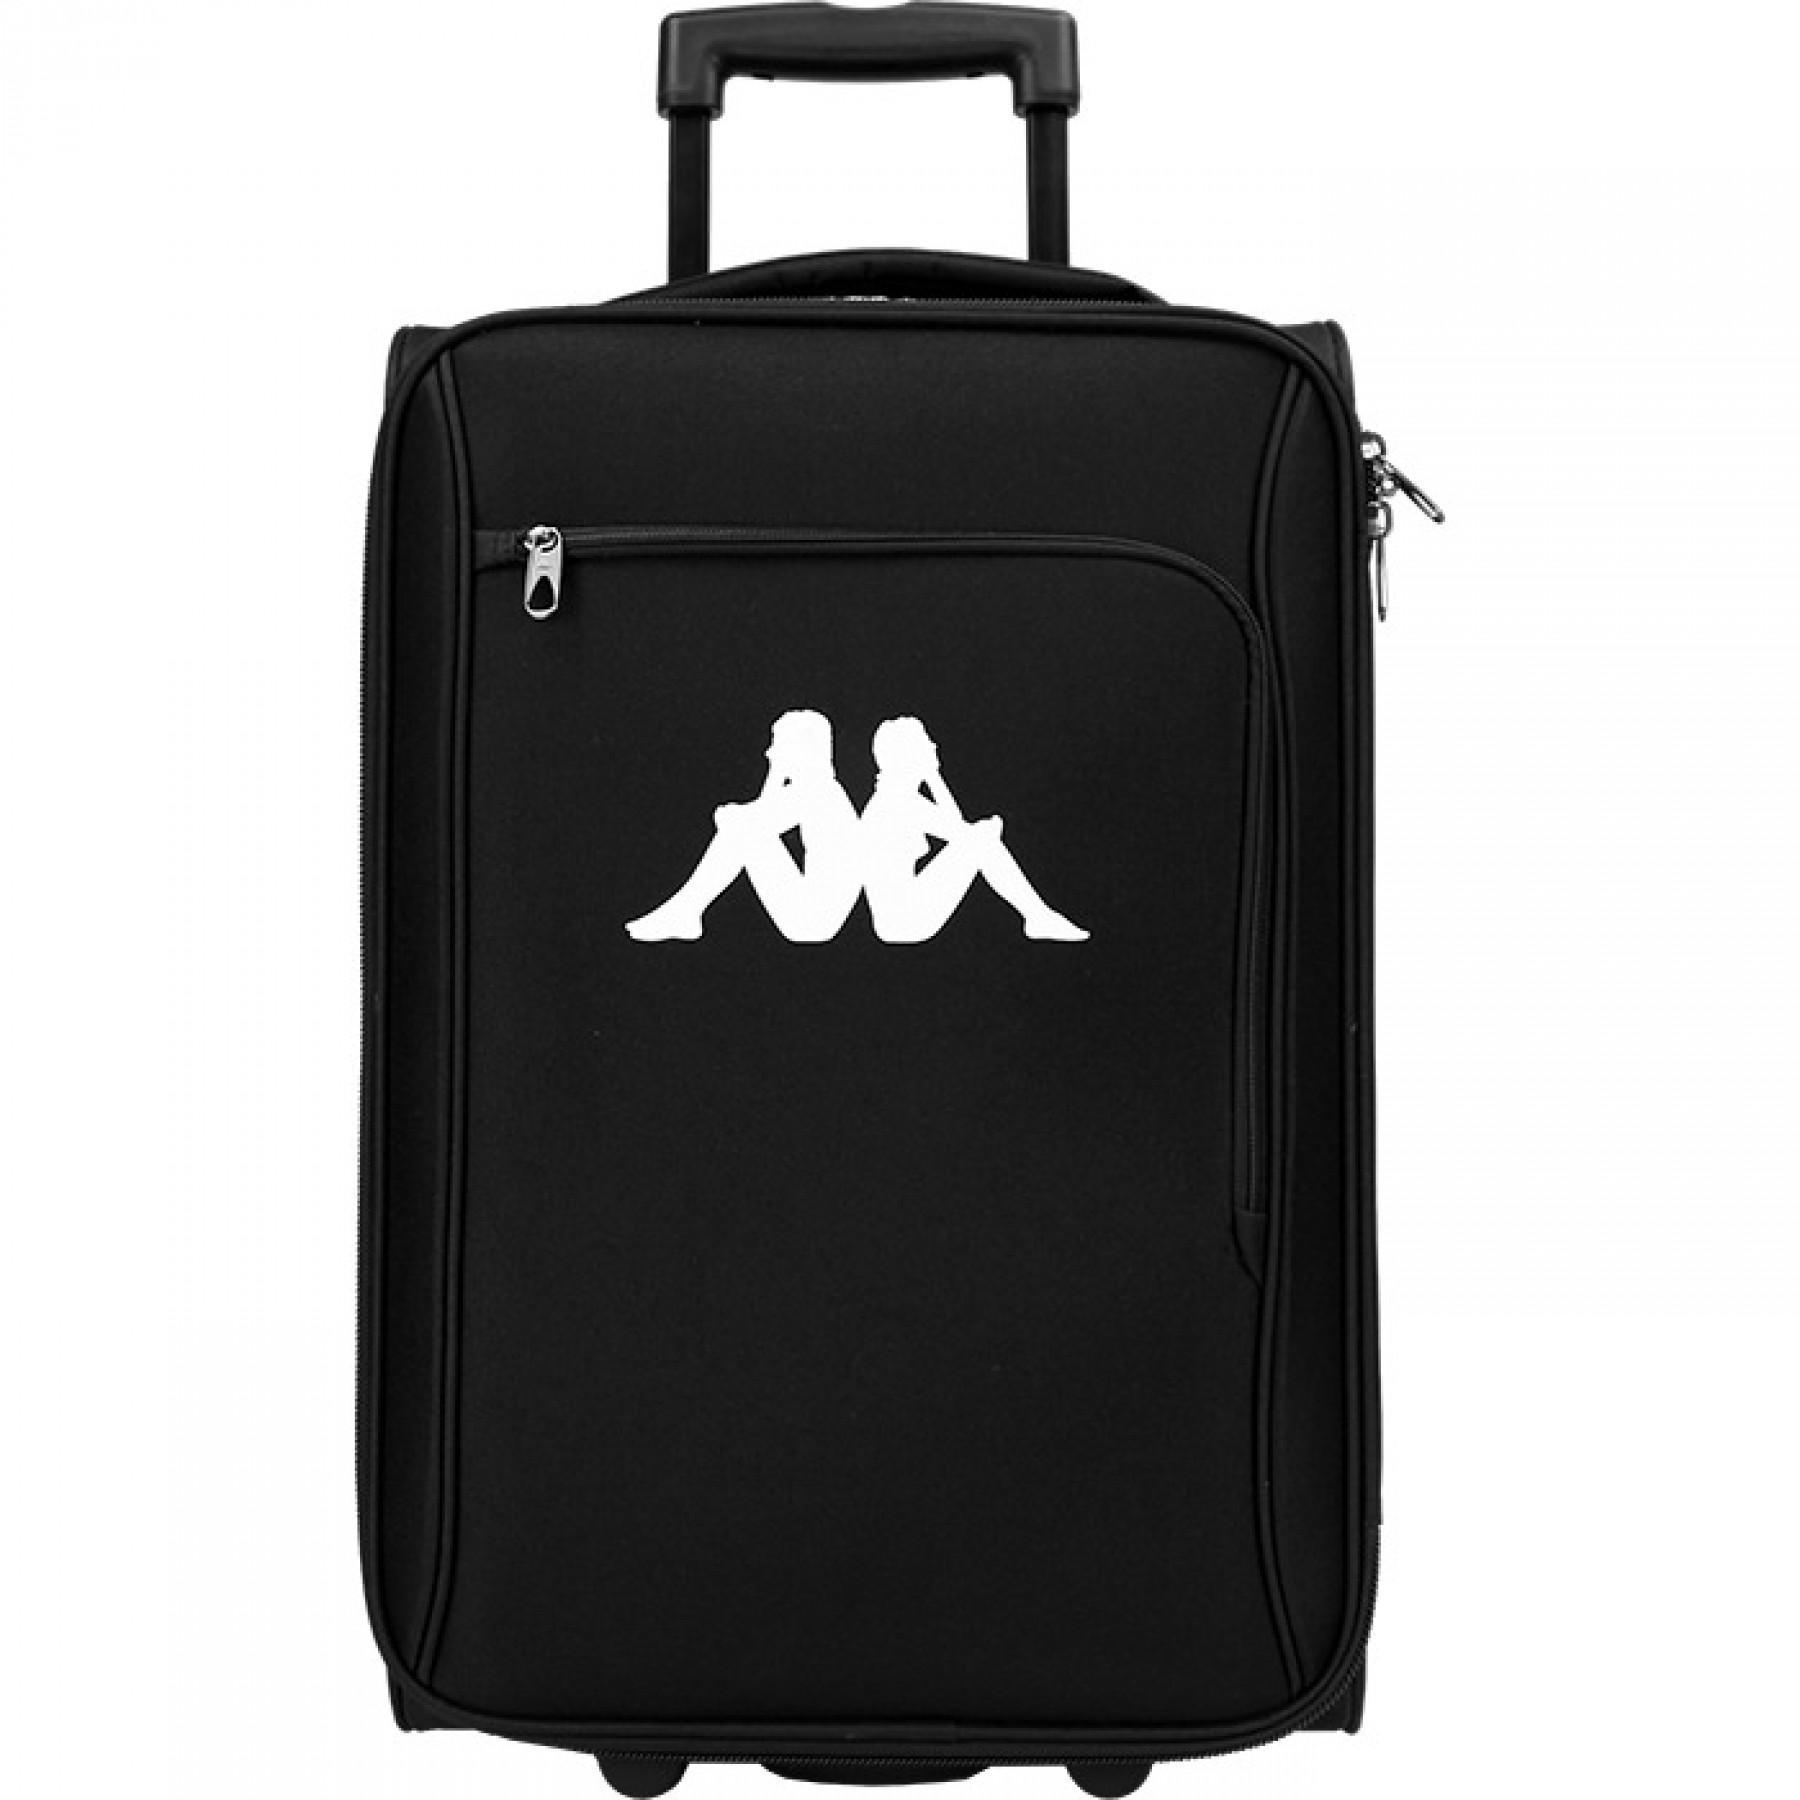 Carry-on suitcase Kappa Alda